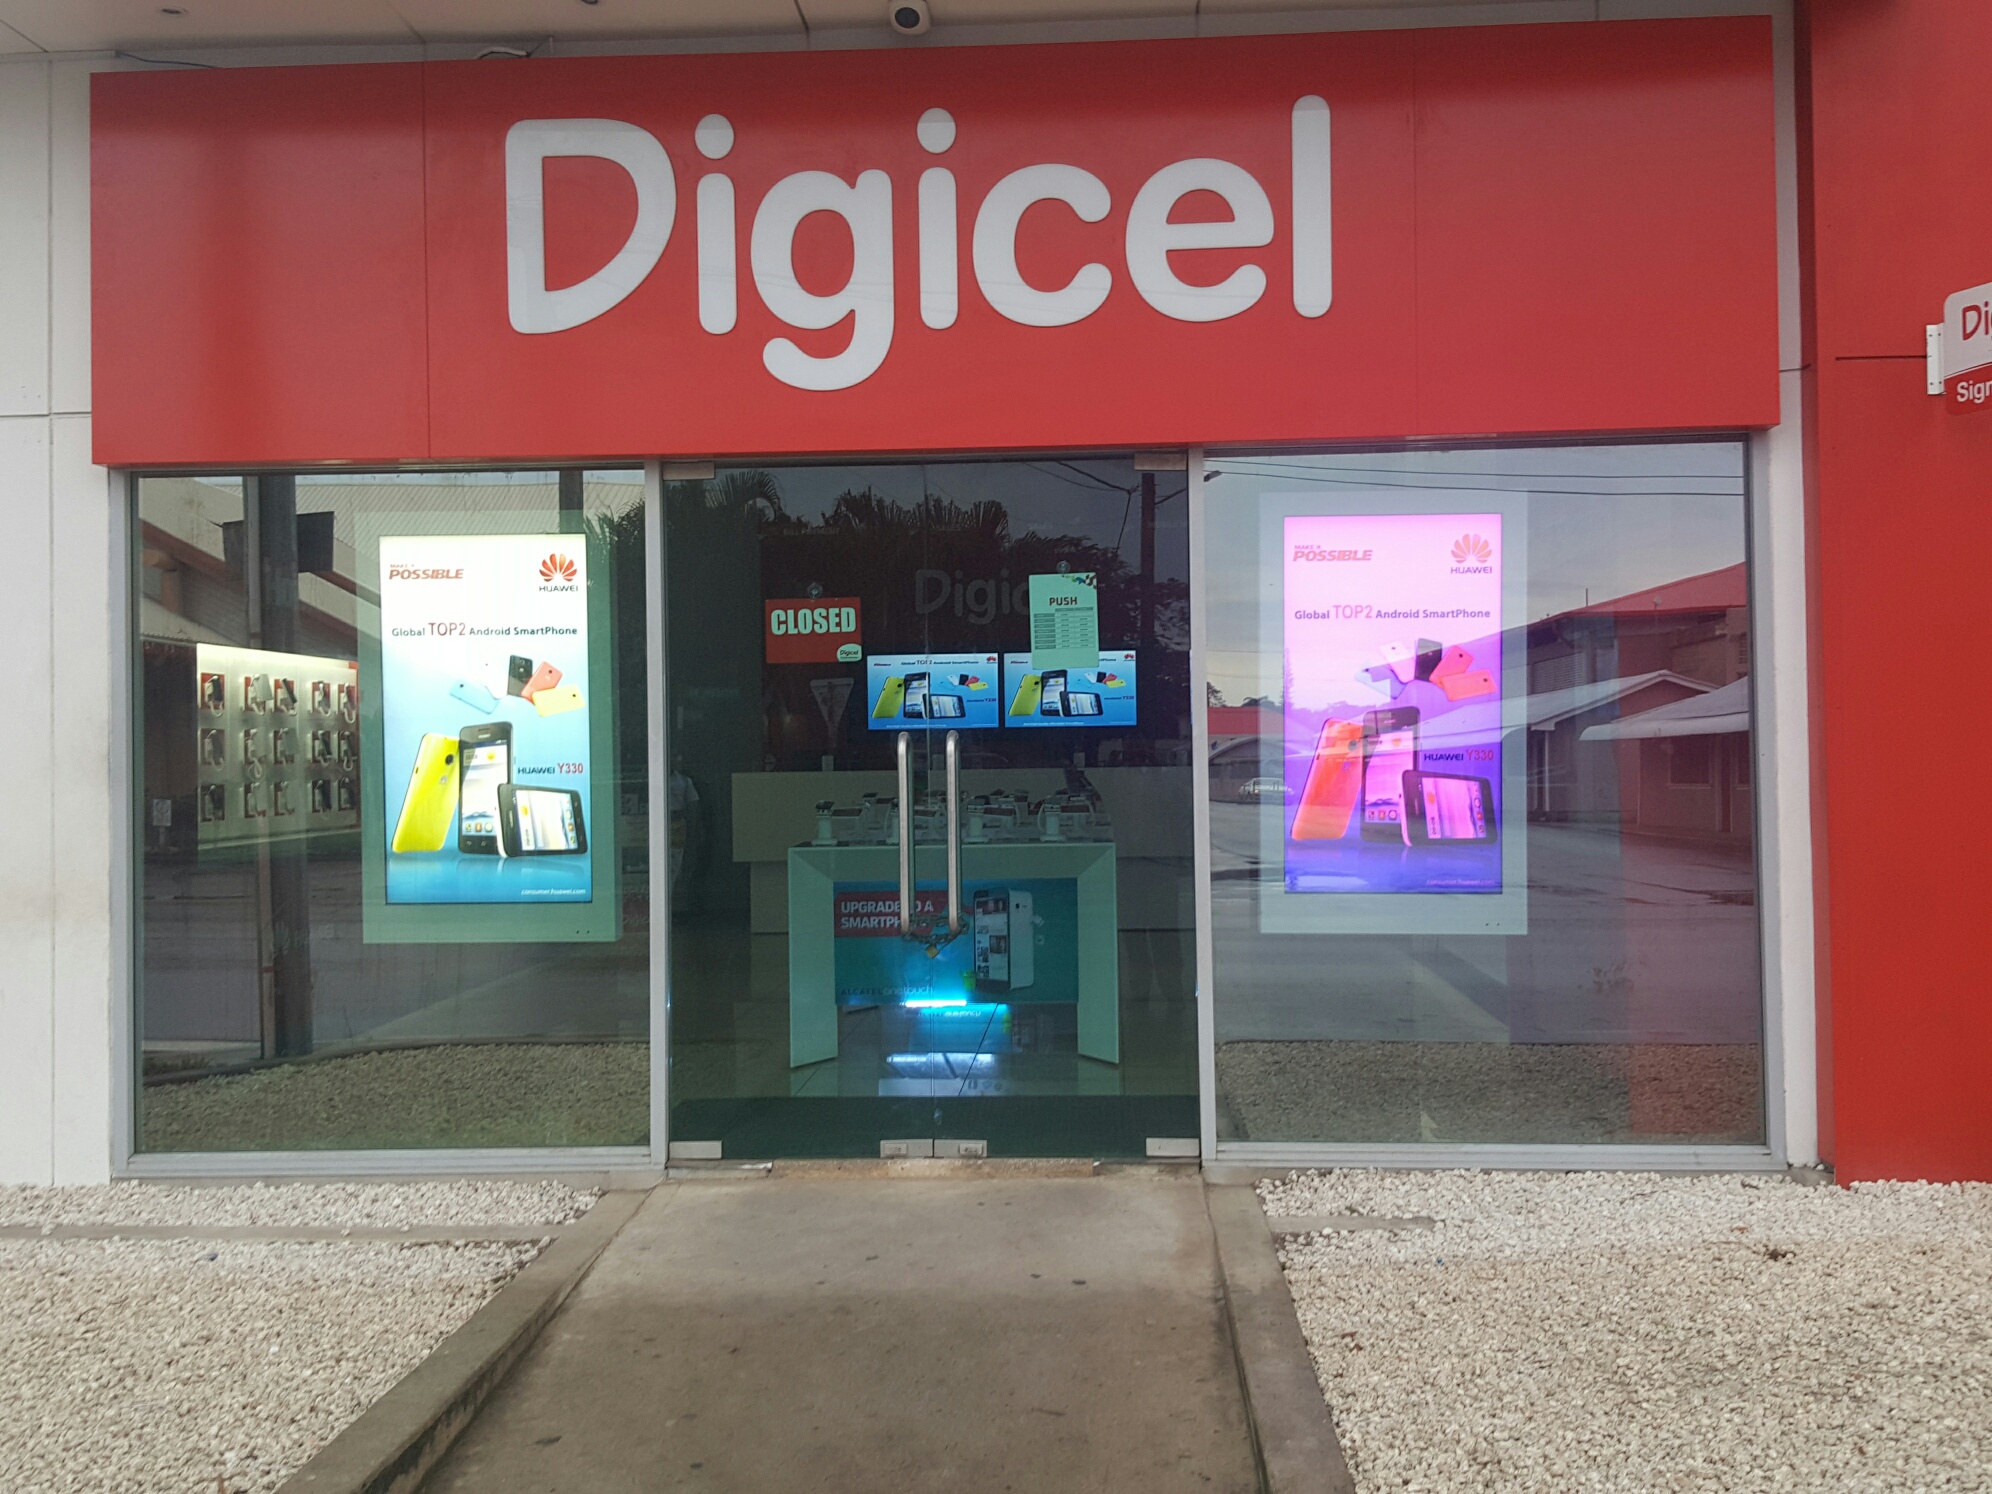 عرض إعلانات windows senpal الانتقال إلى fiji degicel